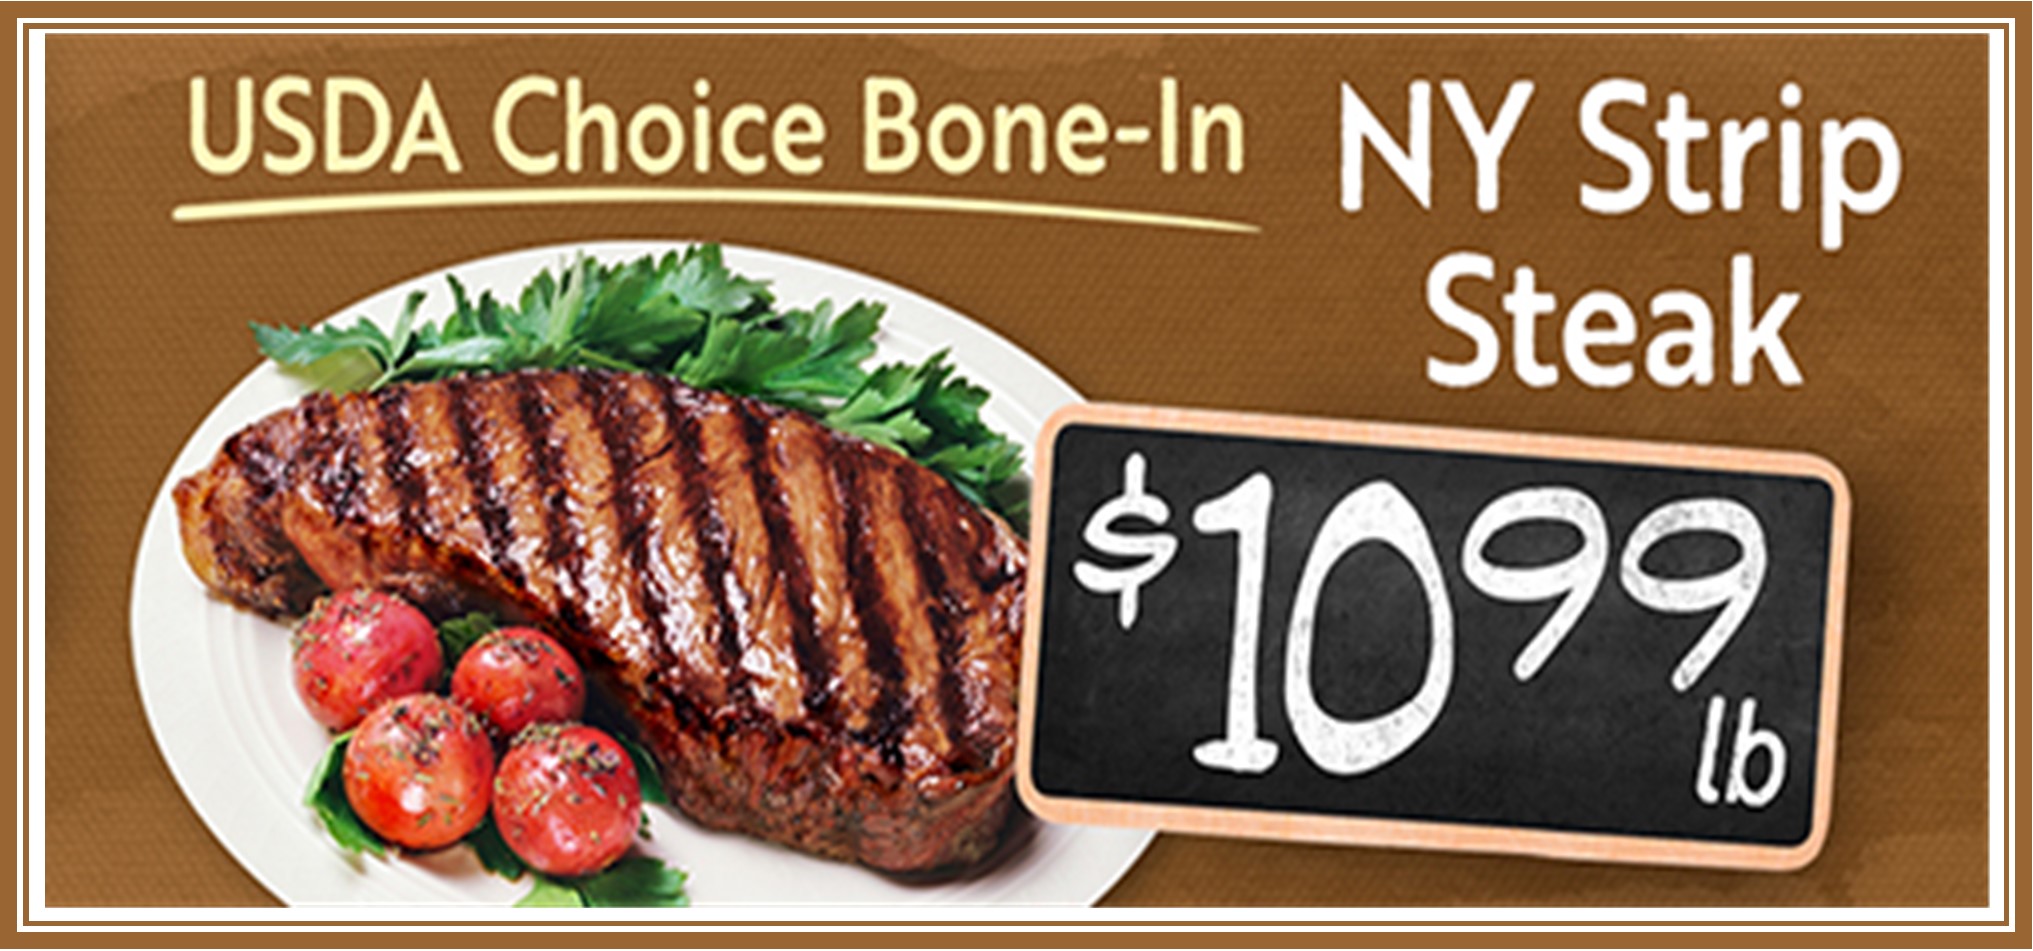 NY Strip Steak Bone In 1099.jpg